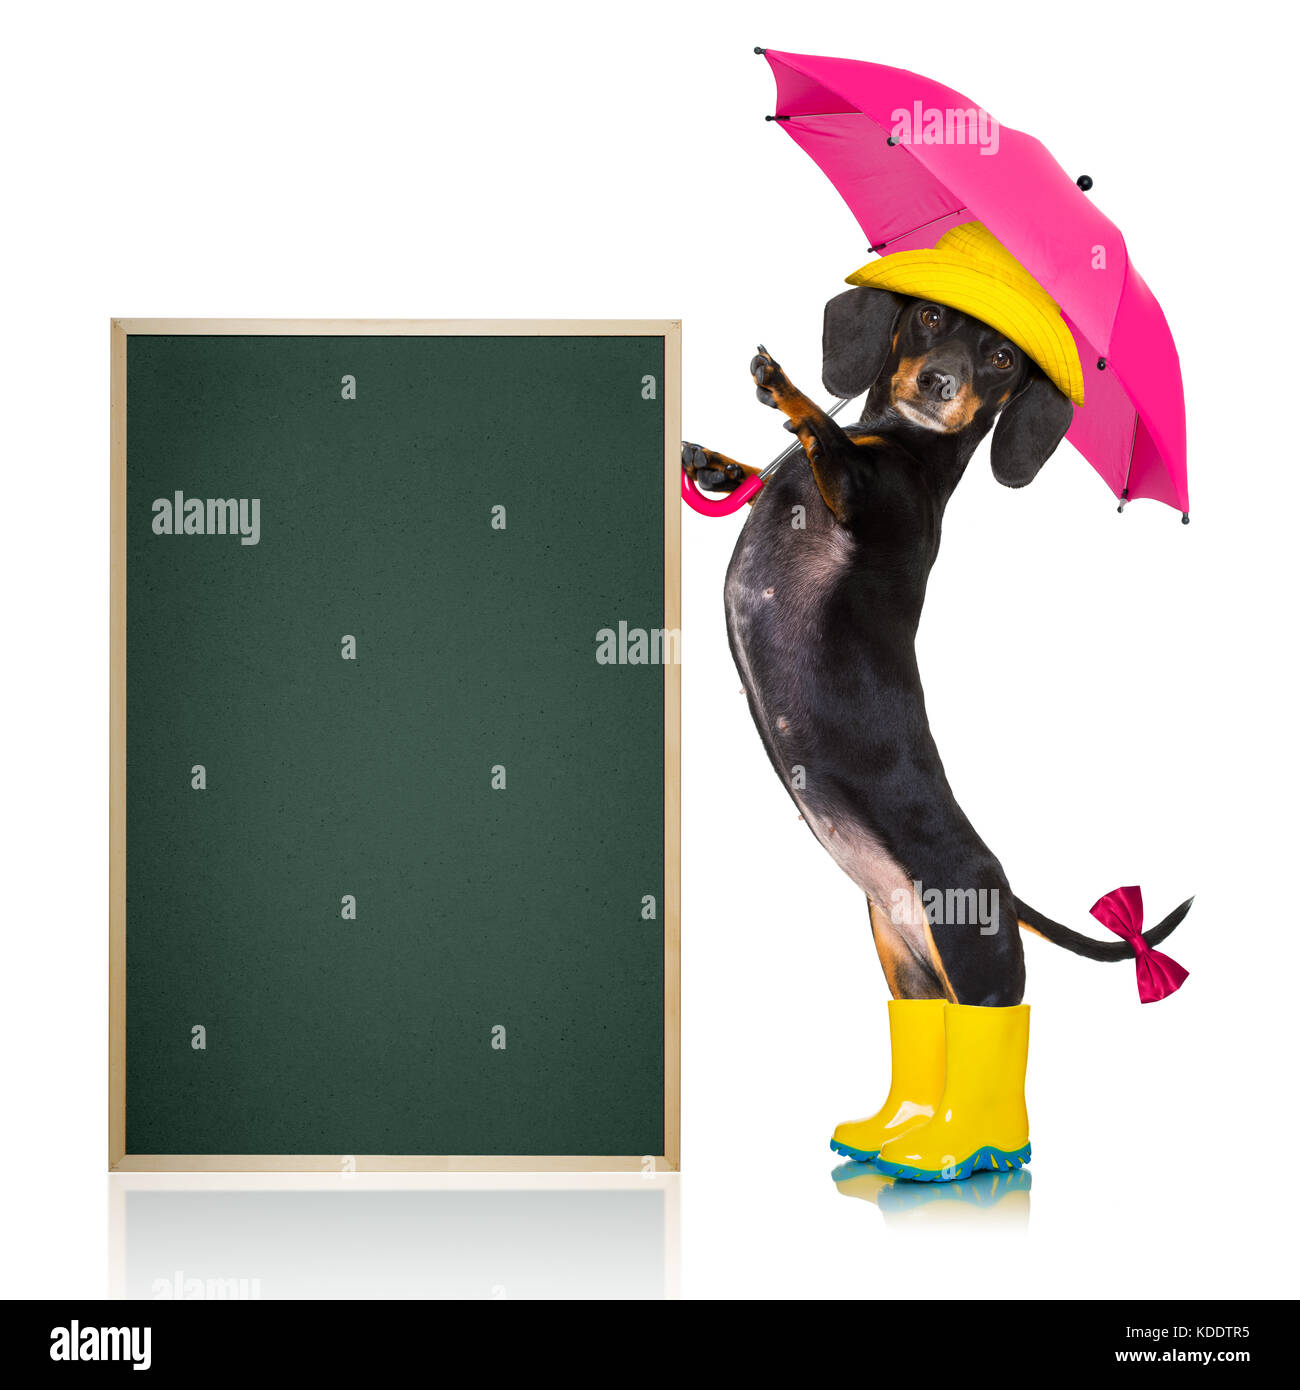 Salsiccia di cane bassotto , pronti e preparati per la pioggia o maltempo  con stivali di gomma , hat e ombrello , isolato su sfondo bianco, lavagna o  Foto stock - Alamy